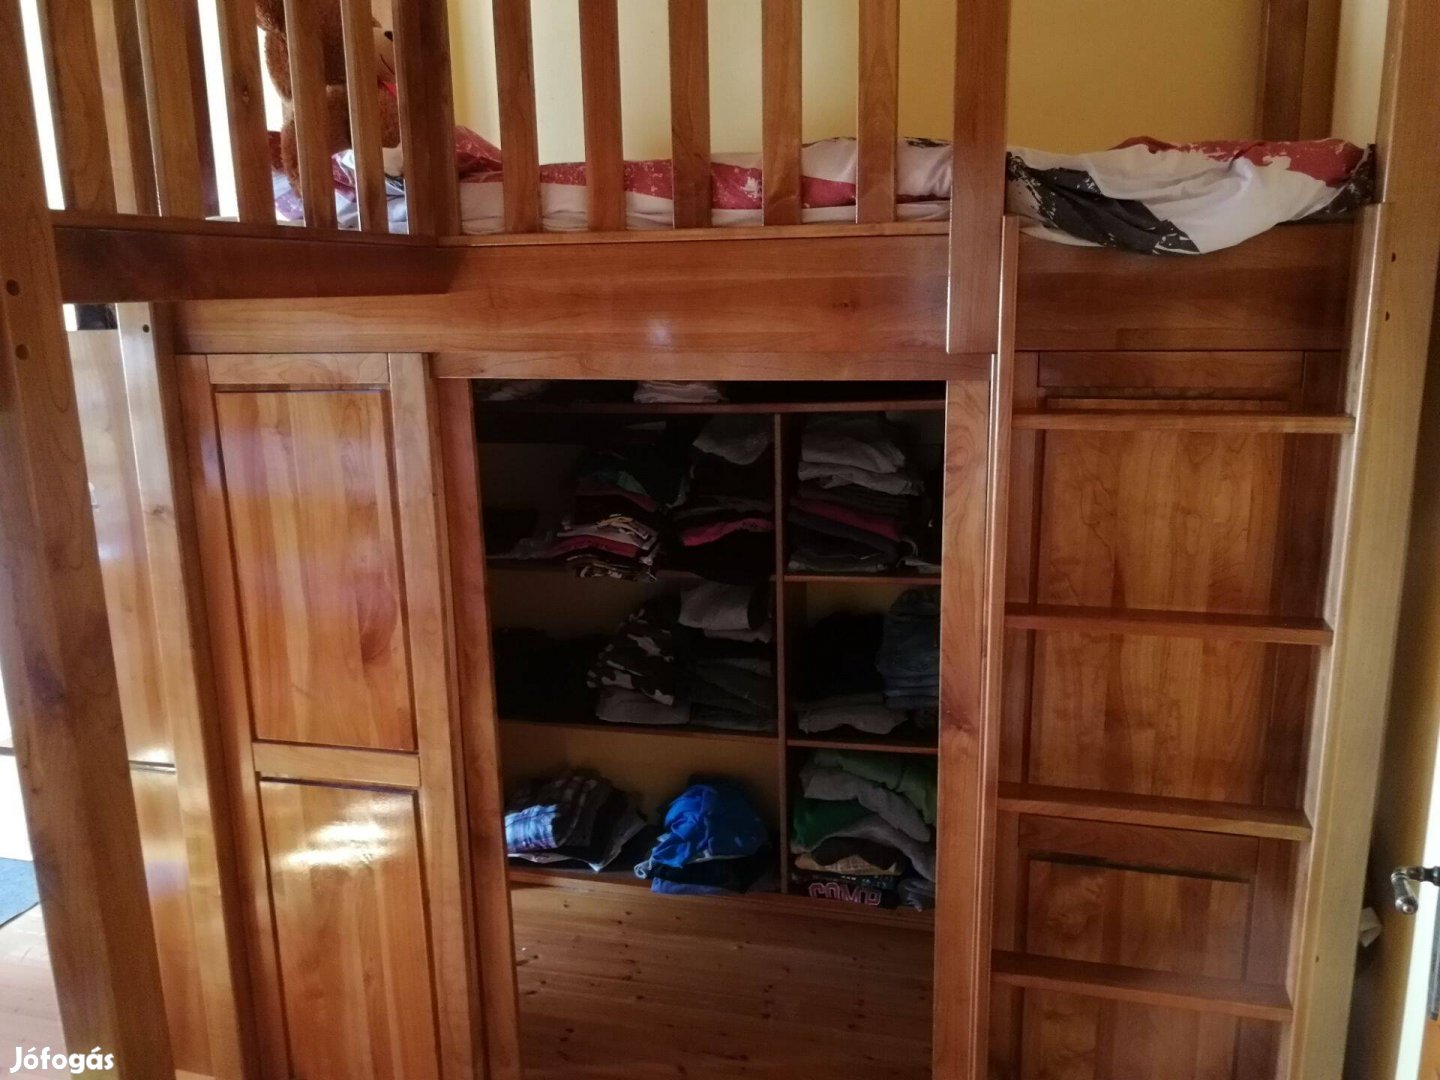 Prémium minőségű gyerek szoba bútor: emeletes ágy, íróasztal, gardrób